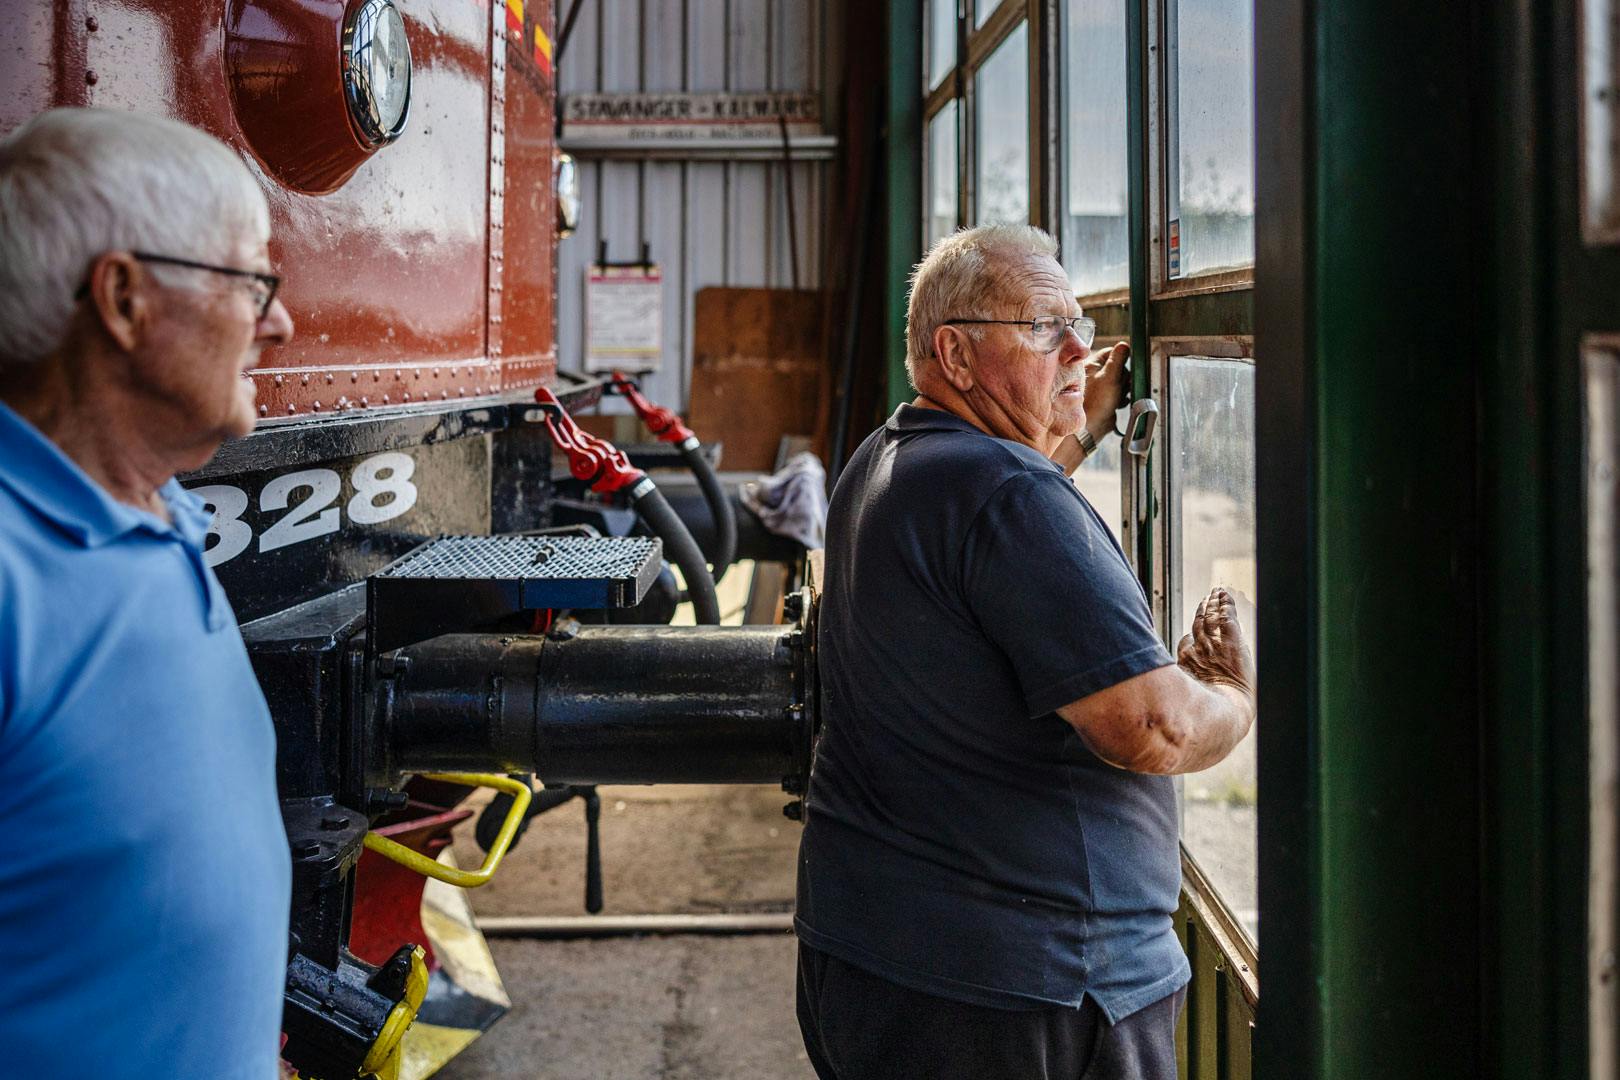 Calle Johansson och Ronny Göthberg är pensionärer och lägger mycket tid på att hålla tågvagnarna i topptrim. 

